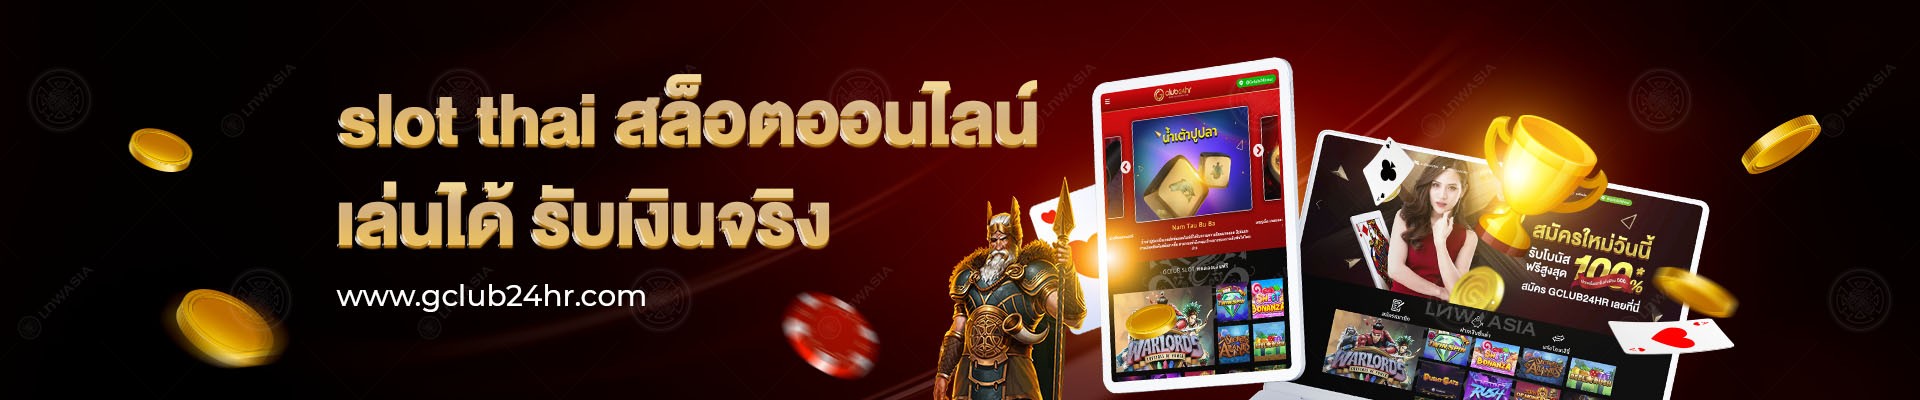 Slot Thai Good Website